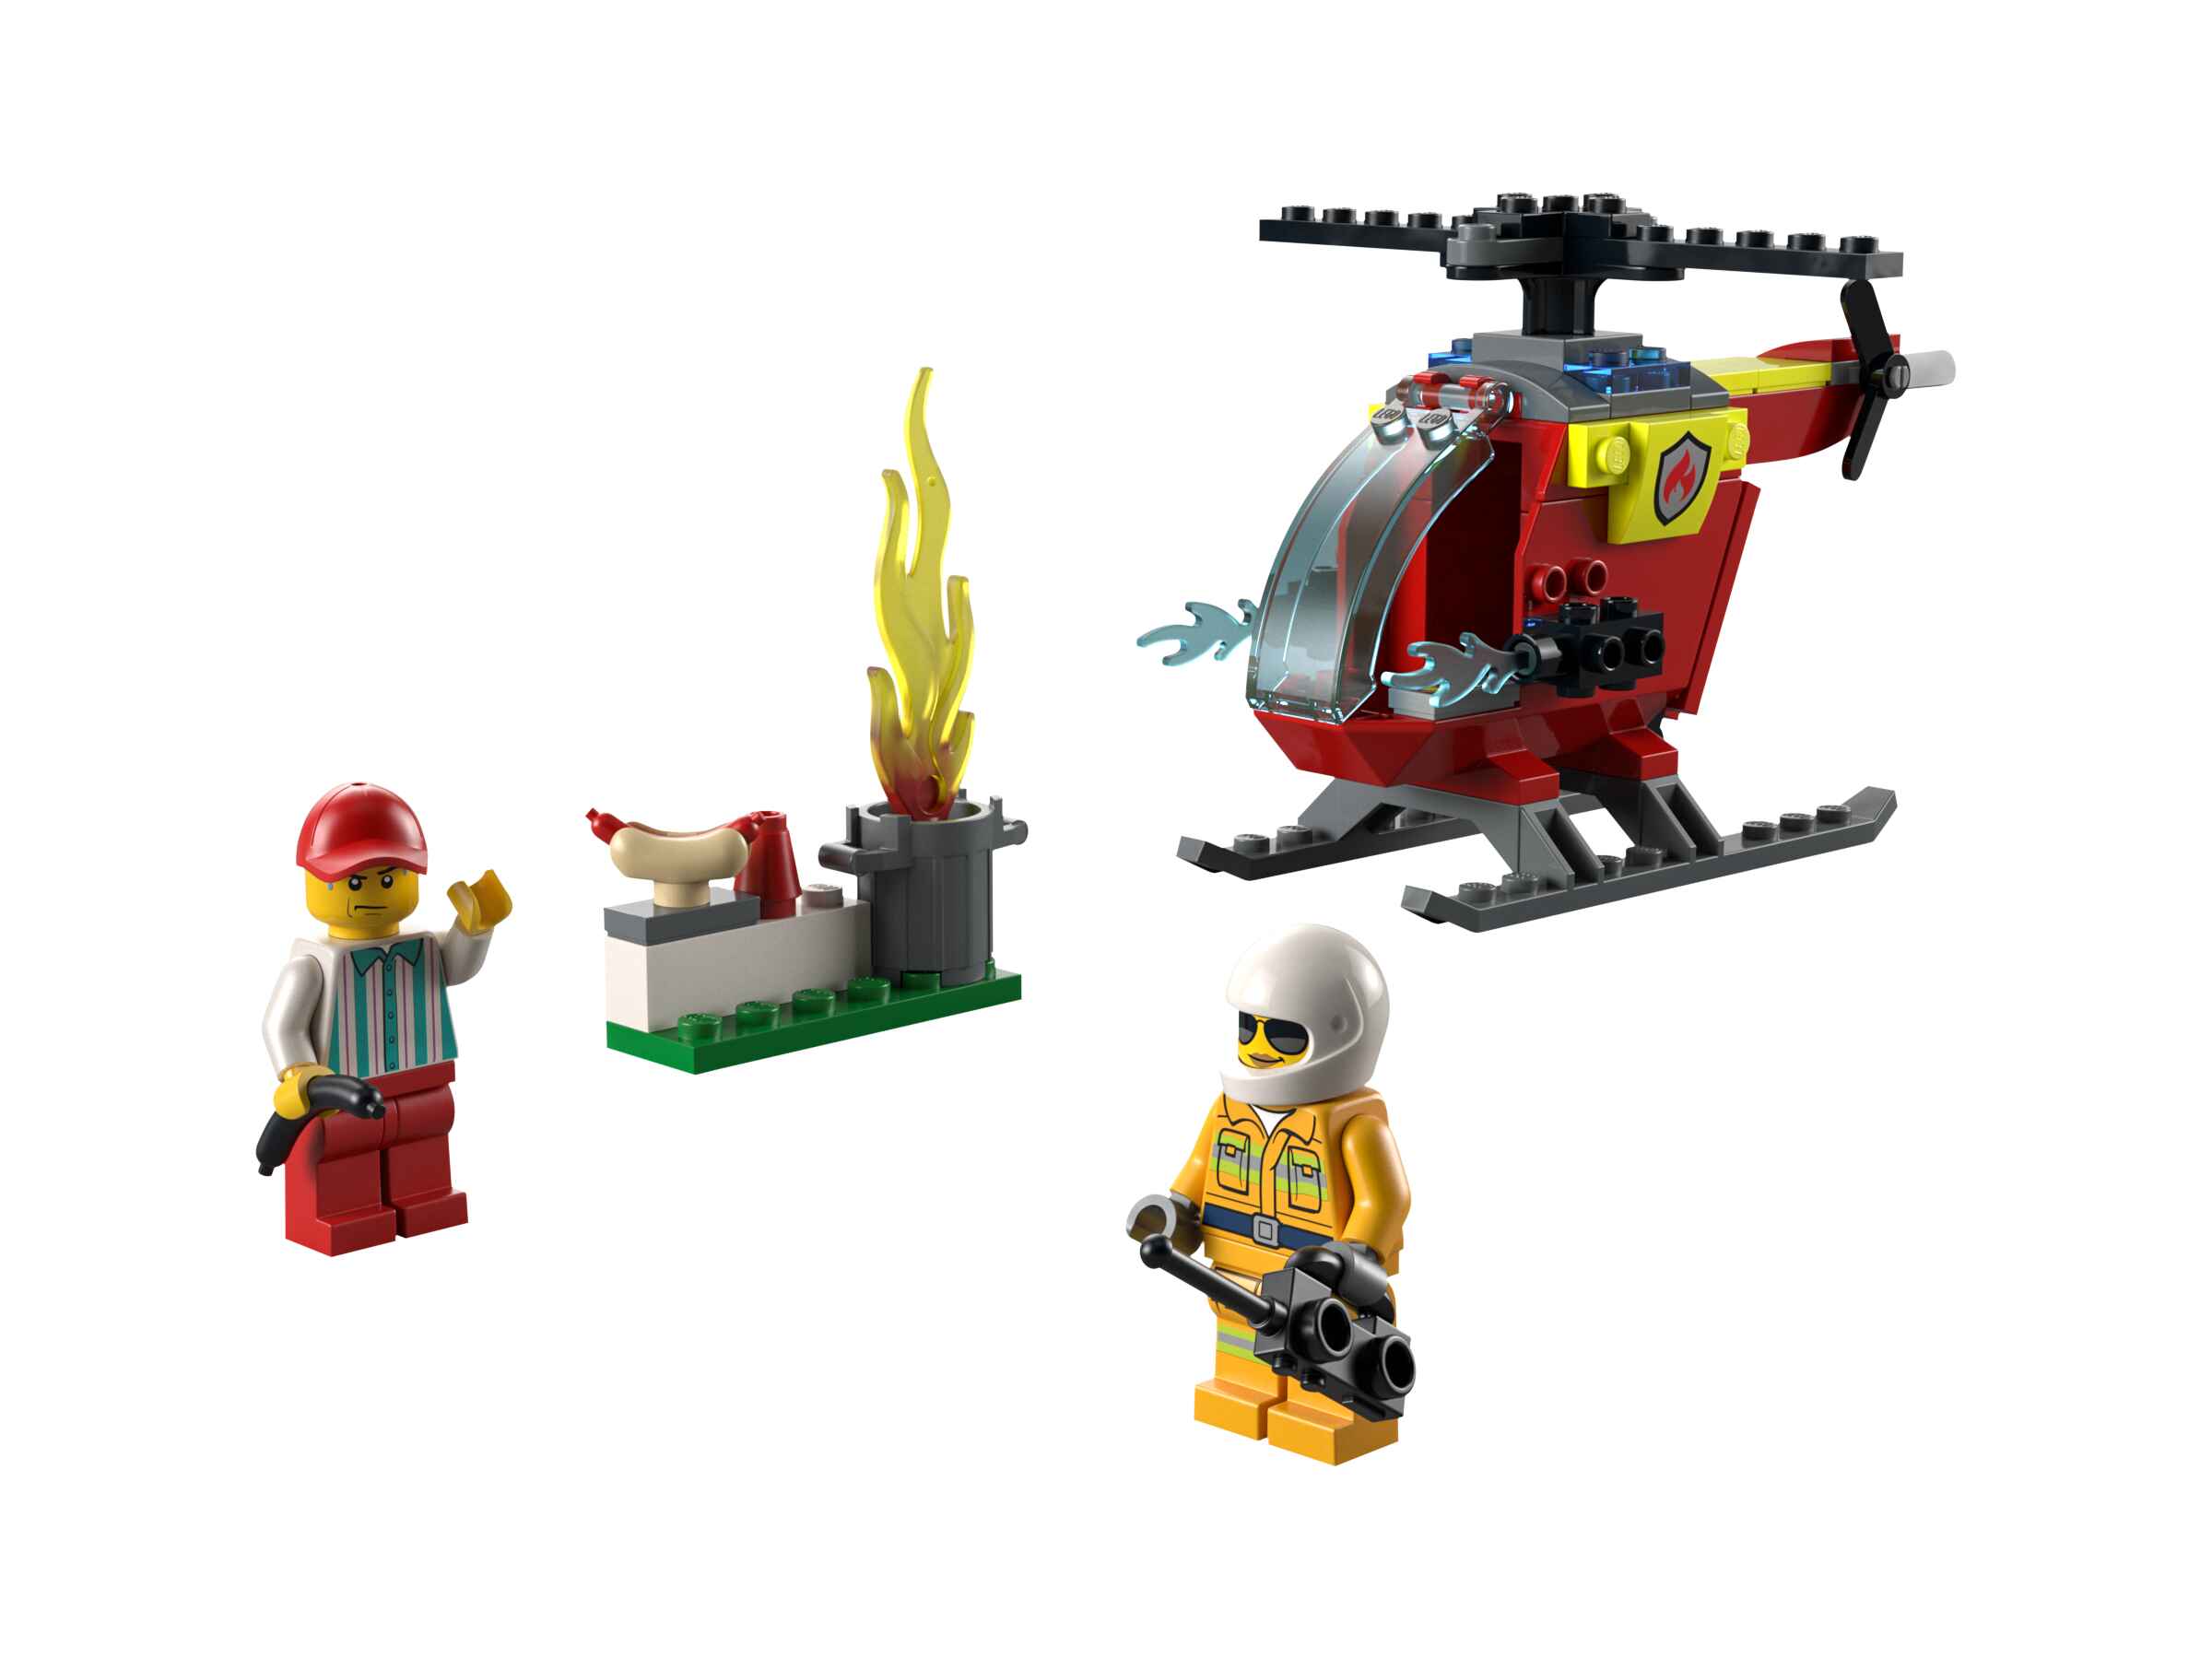 LEGO 60318 City Feuerwehrhubschrauber mit 2 Minifiguren und Startbaustein